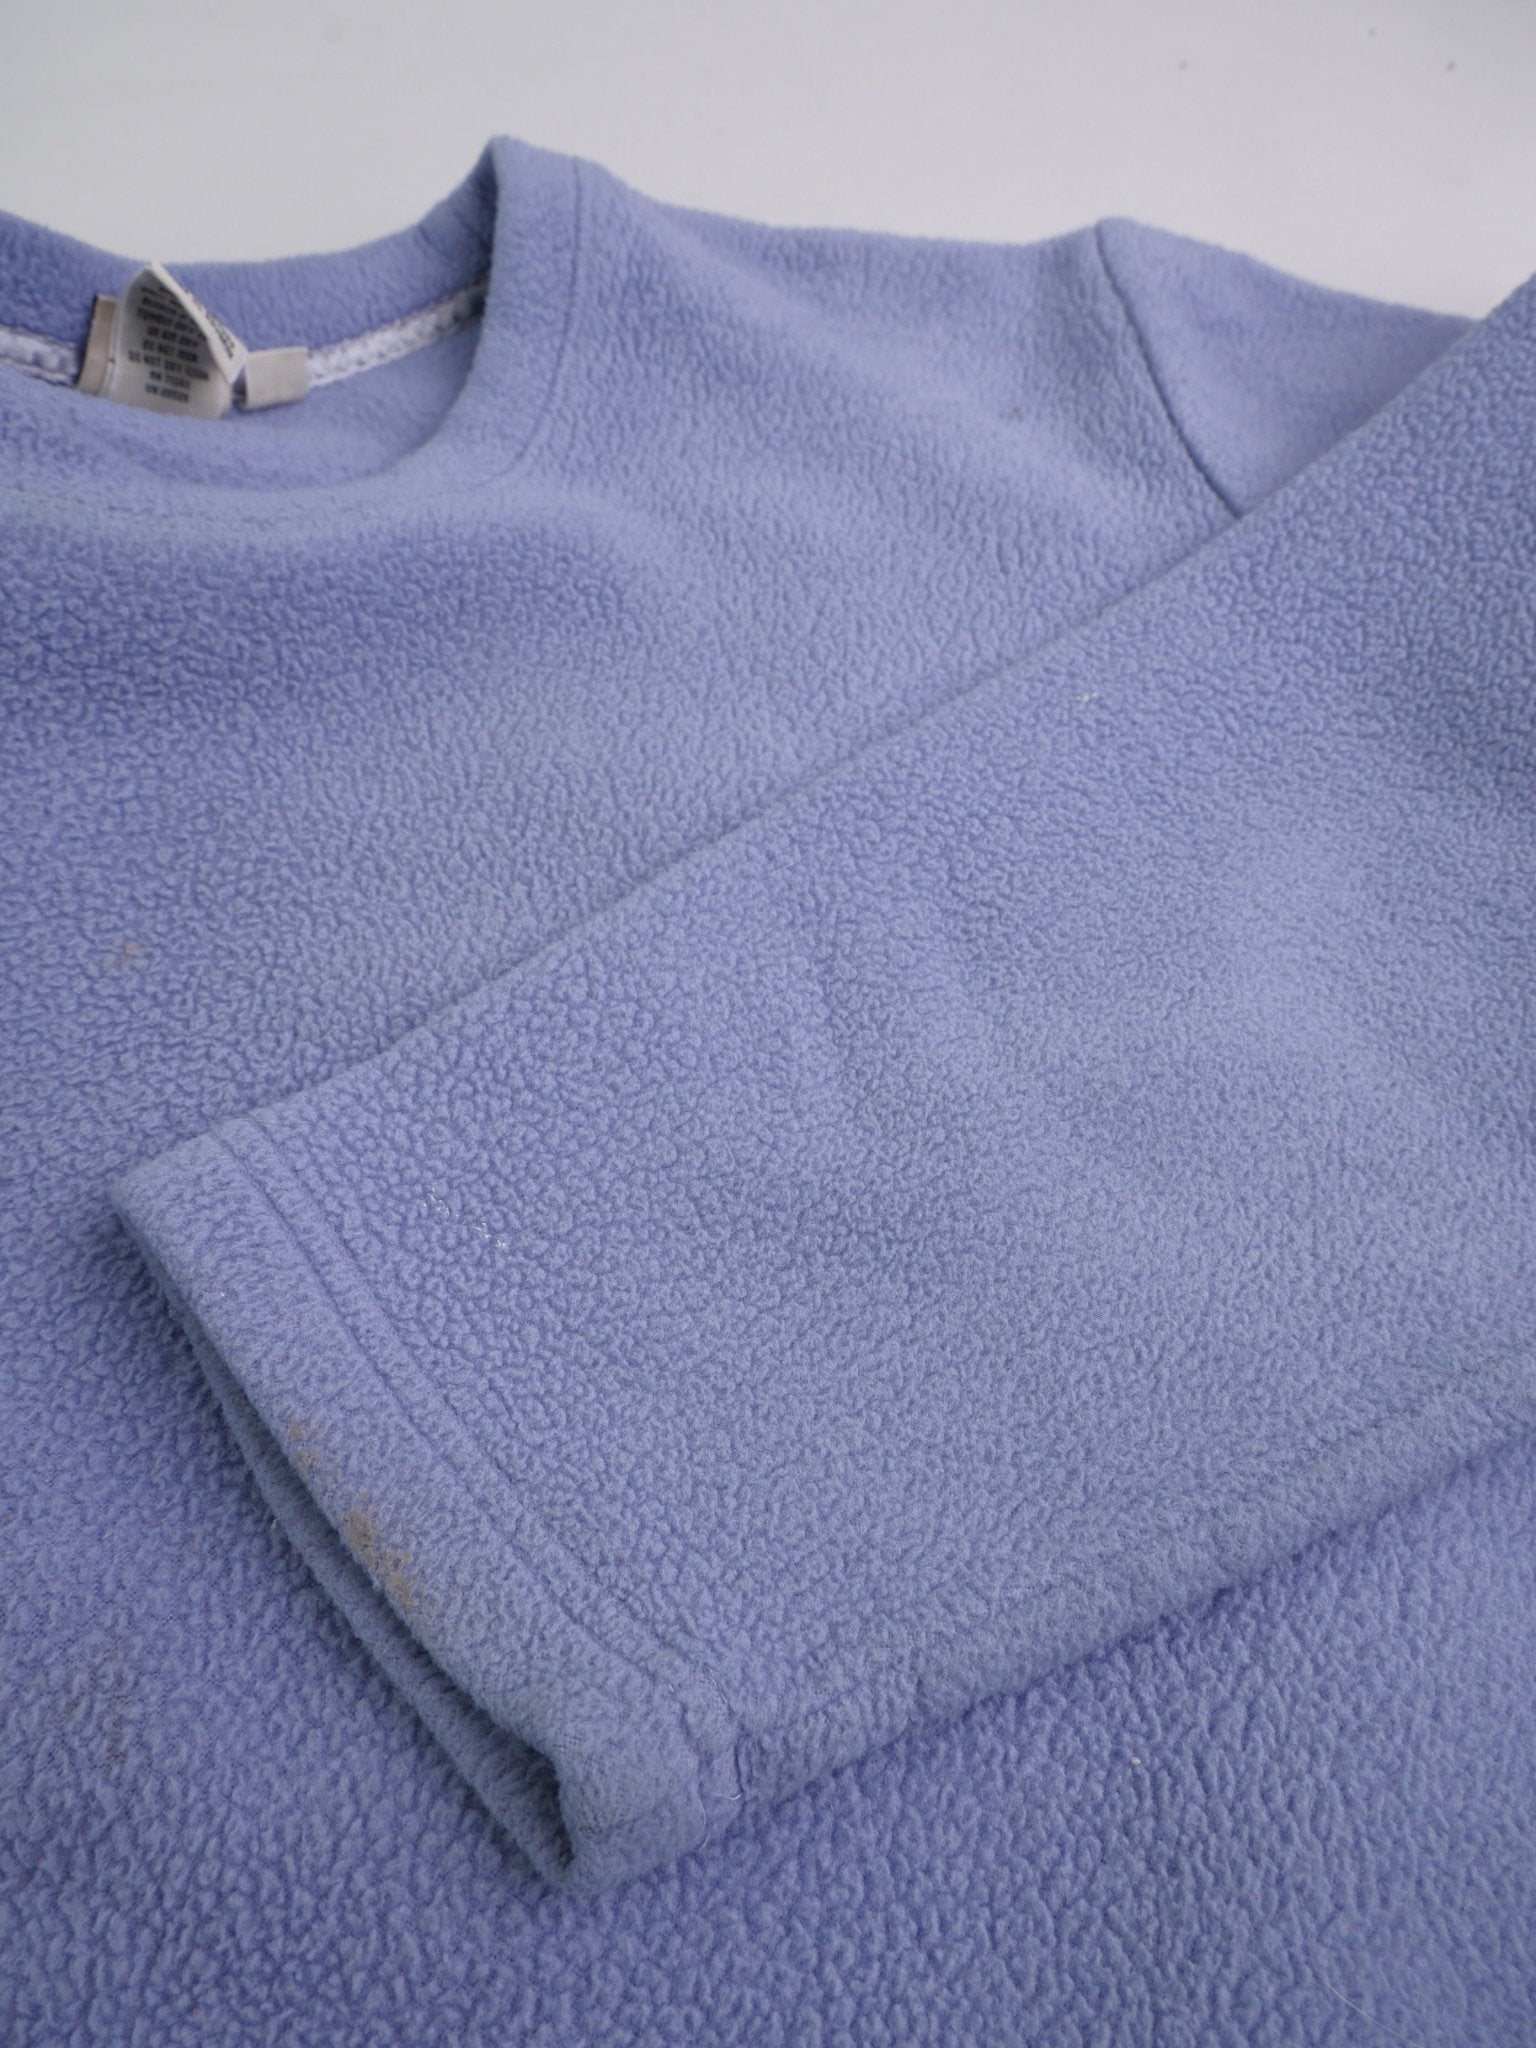 LL Bean plain Fleece blue Sweater - Peeces